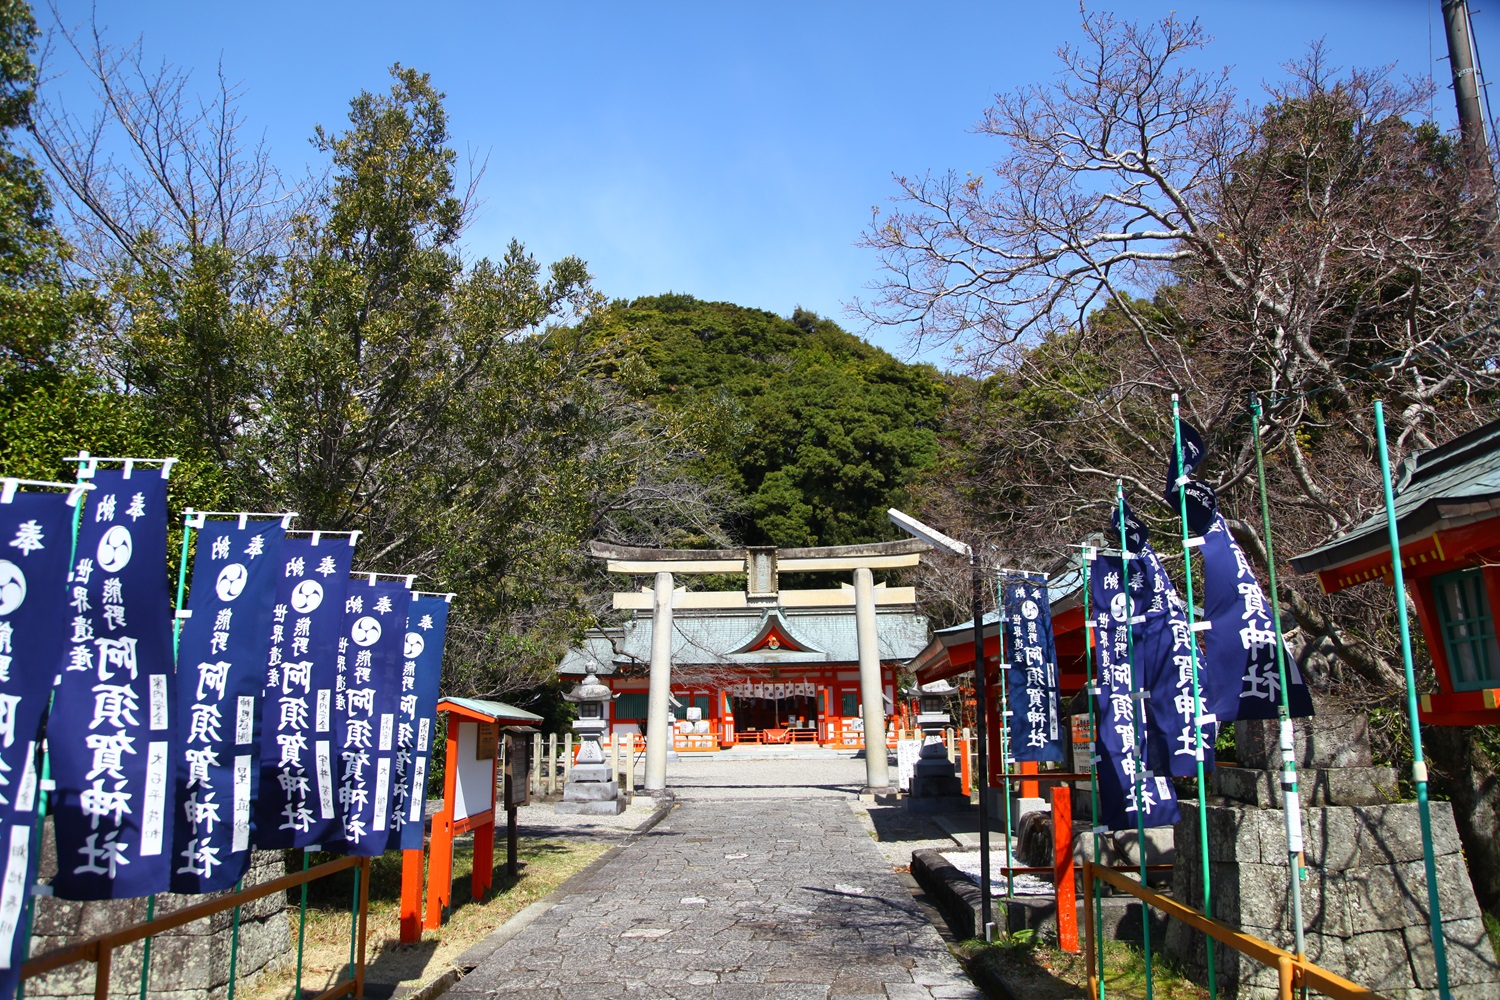 阿須賀神社。背後にそびえるのが蓬莱山。